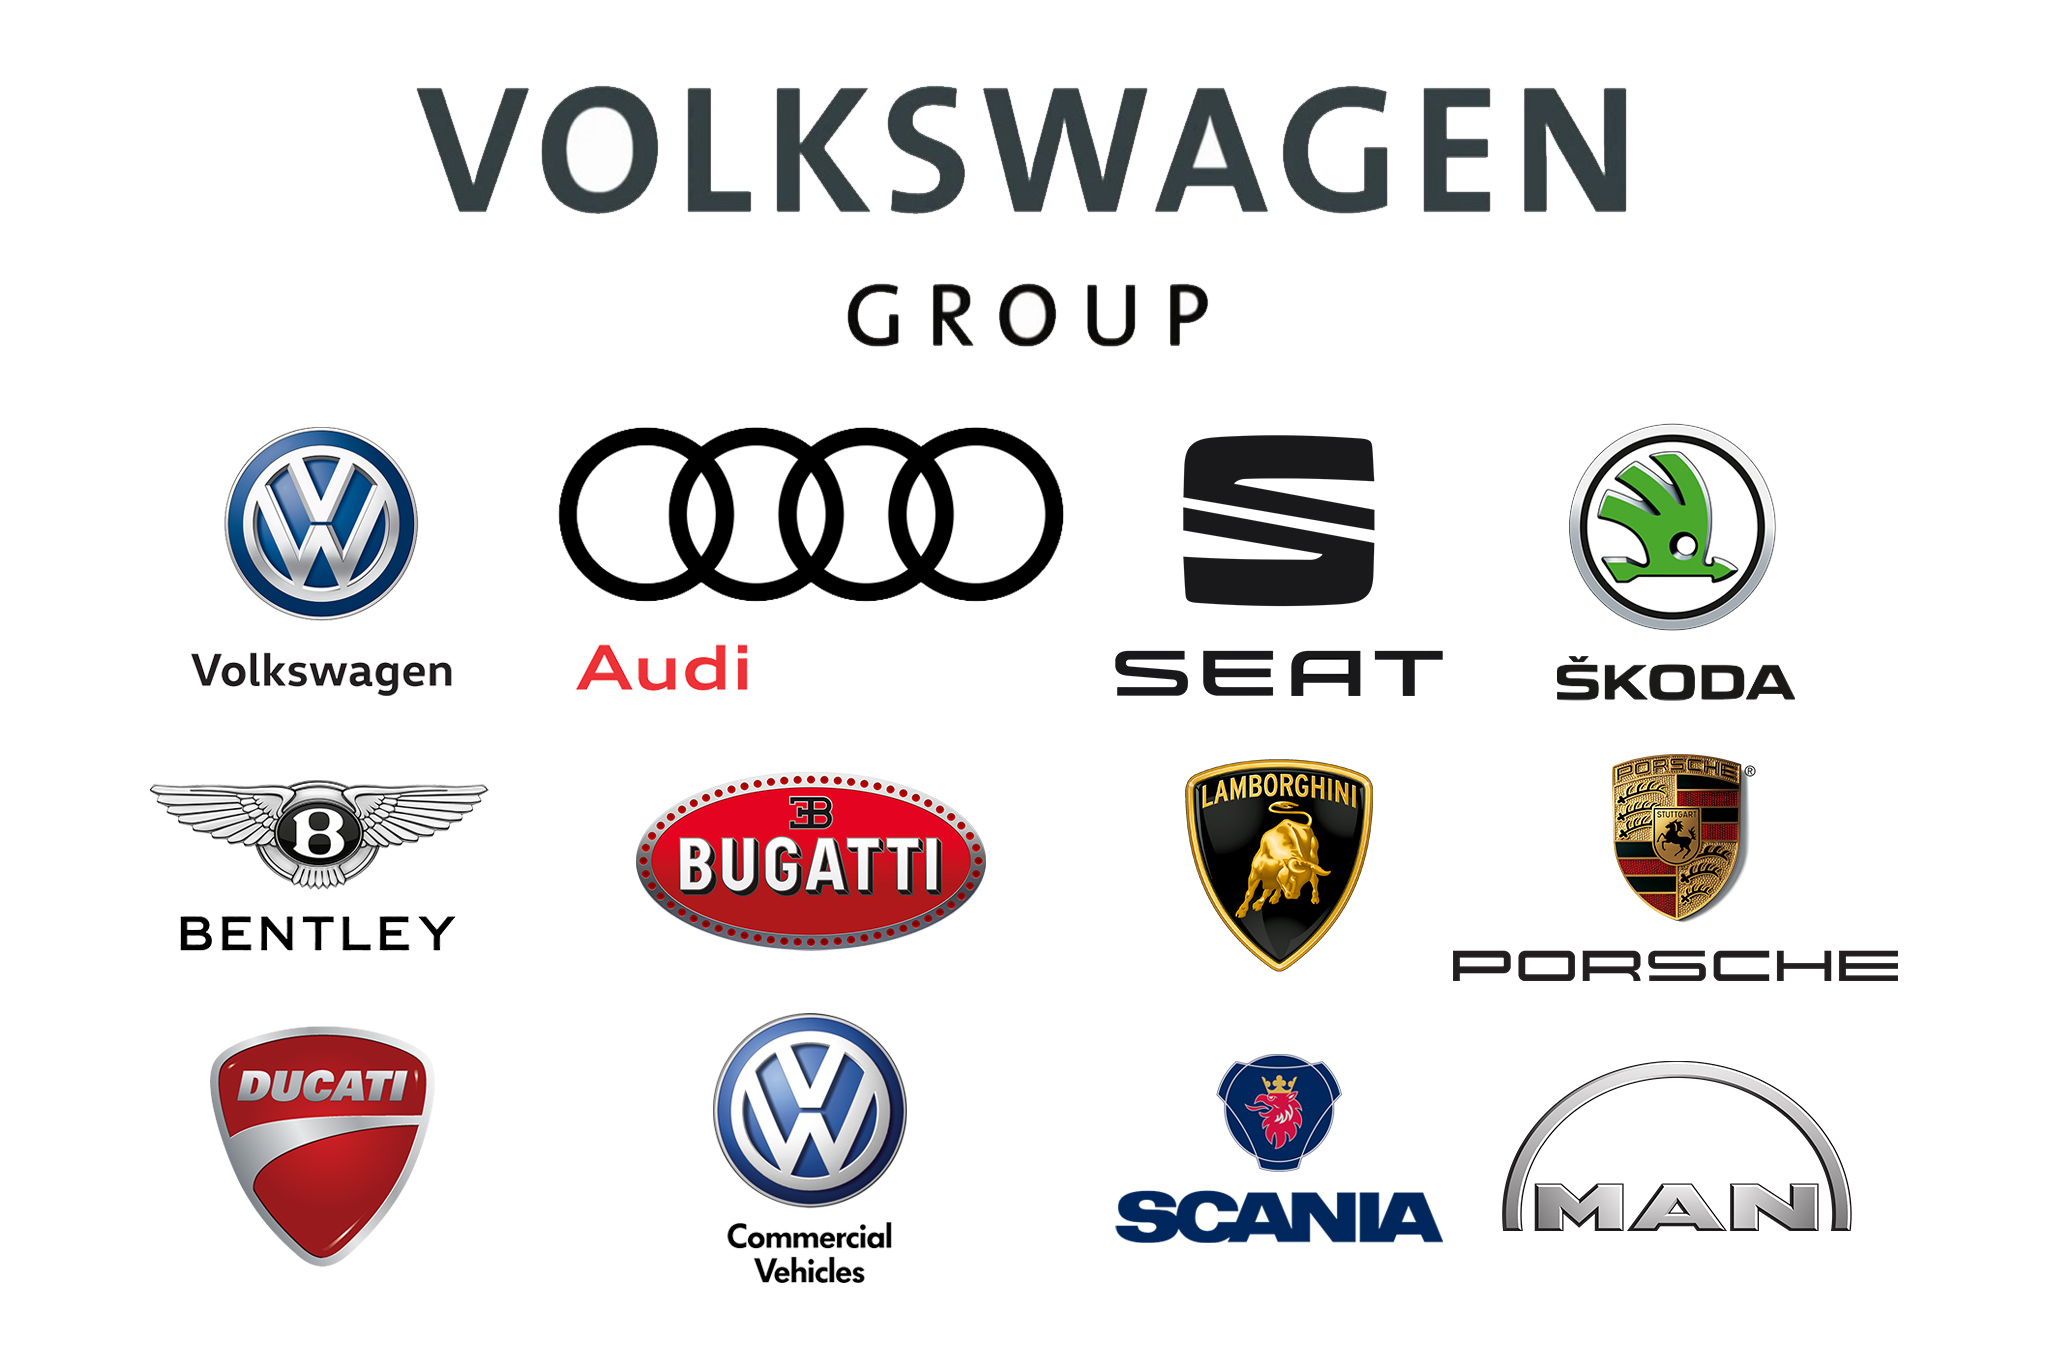 Volkswagen TẬp ĐoÀn Ô TÔ Top ĐẦu ThẾ GiỚi VỚi CỔ PhiẾu SiÊu RẺ Chia CỔ TỨc LỢi NhuẬn ĐẾn 148%